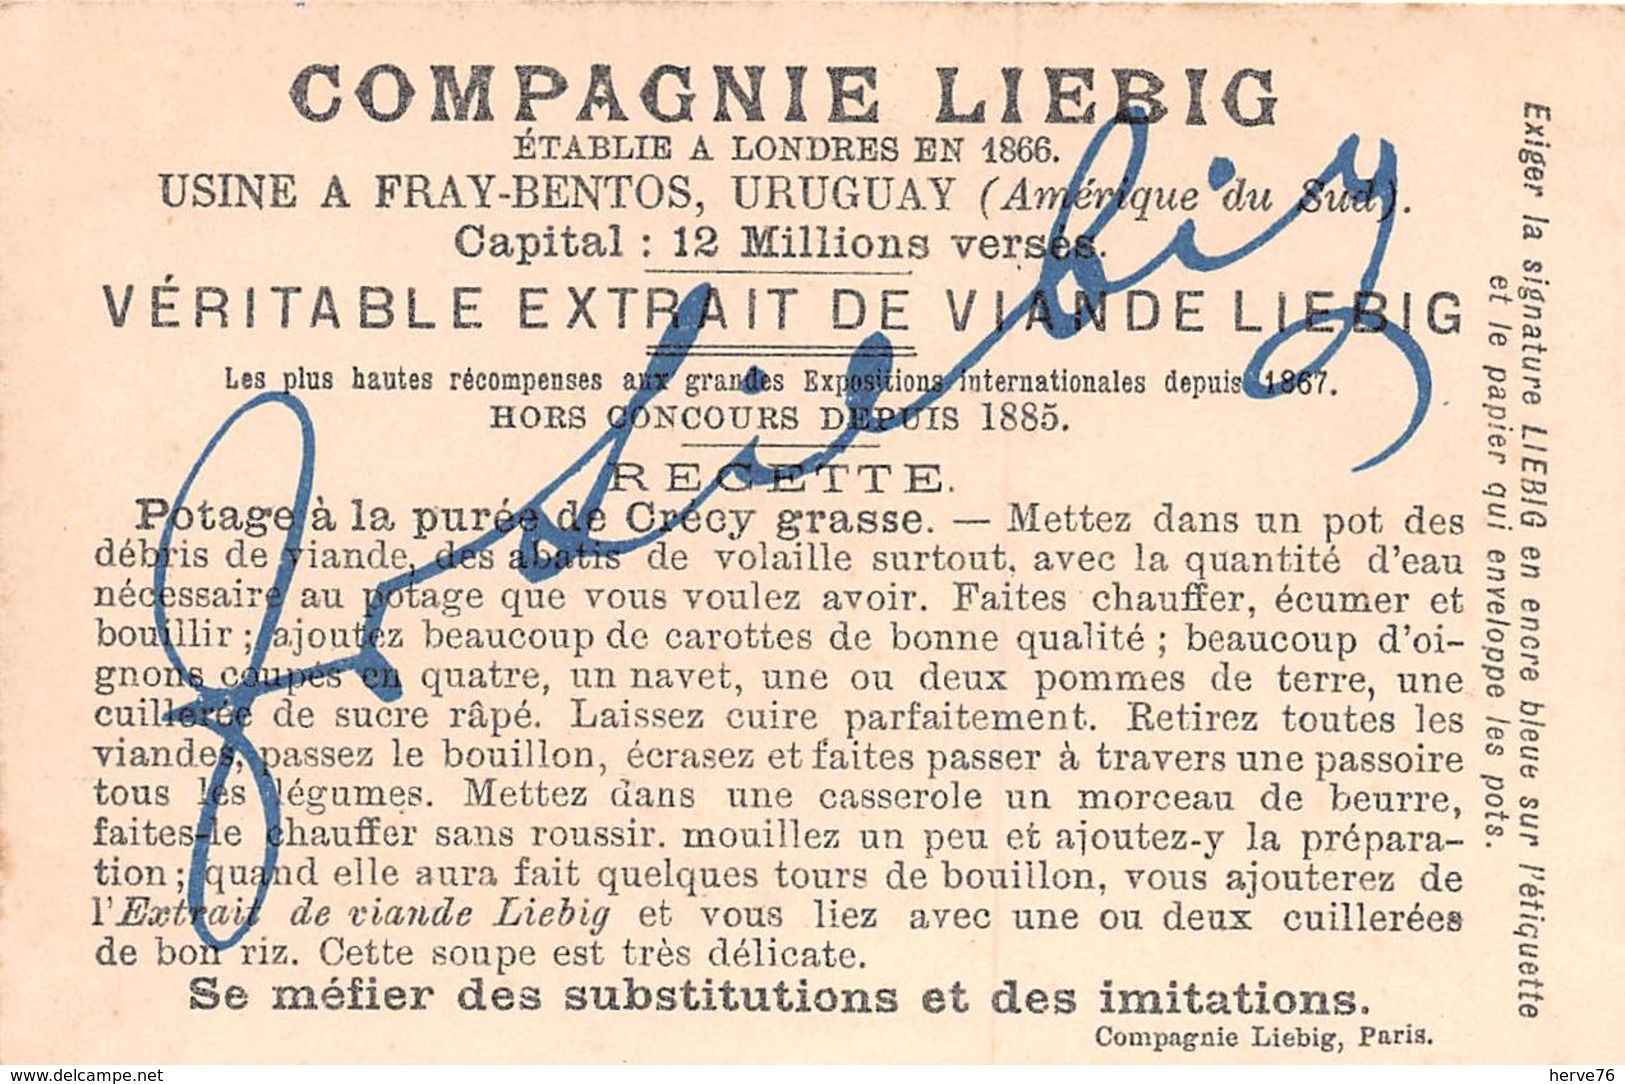 Chromo LIEBIG - Départ De Jeanne D'Arc De Vaucouleurs - Liebig